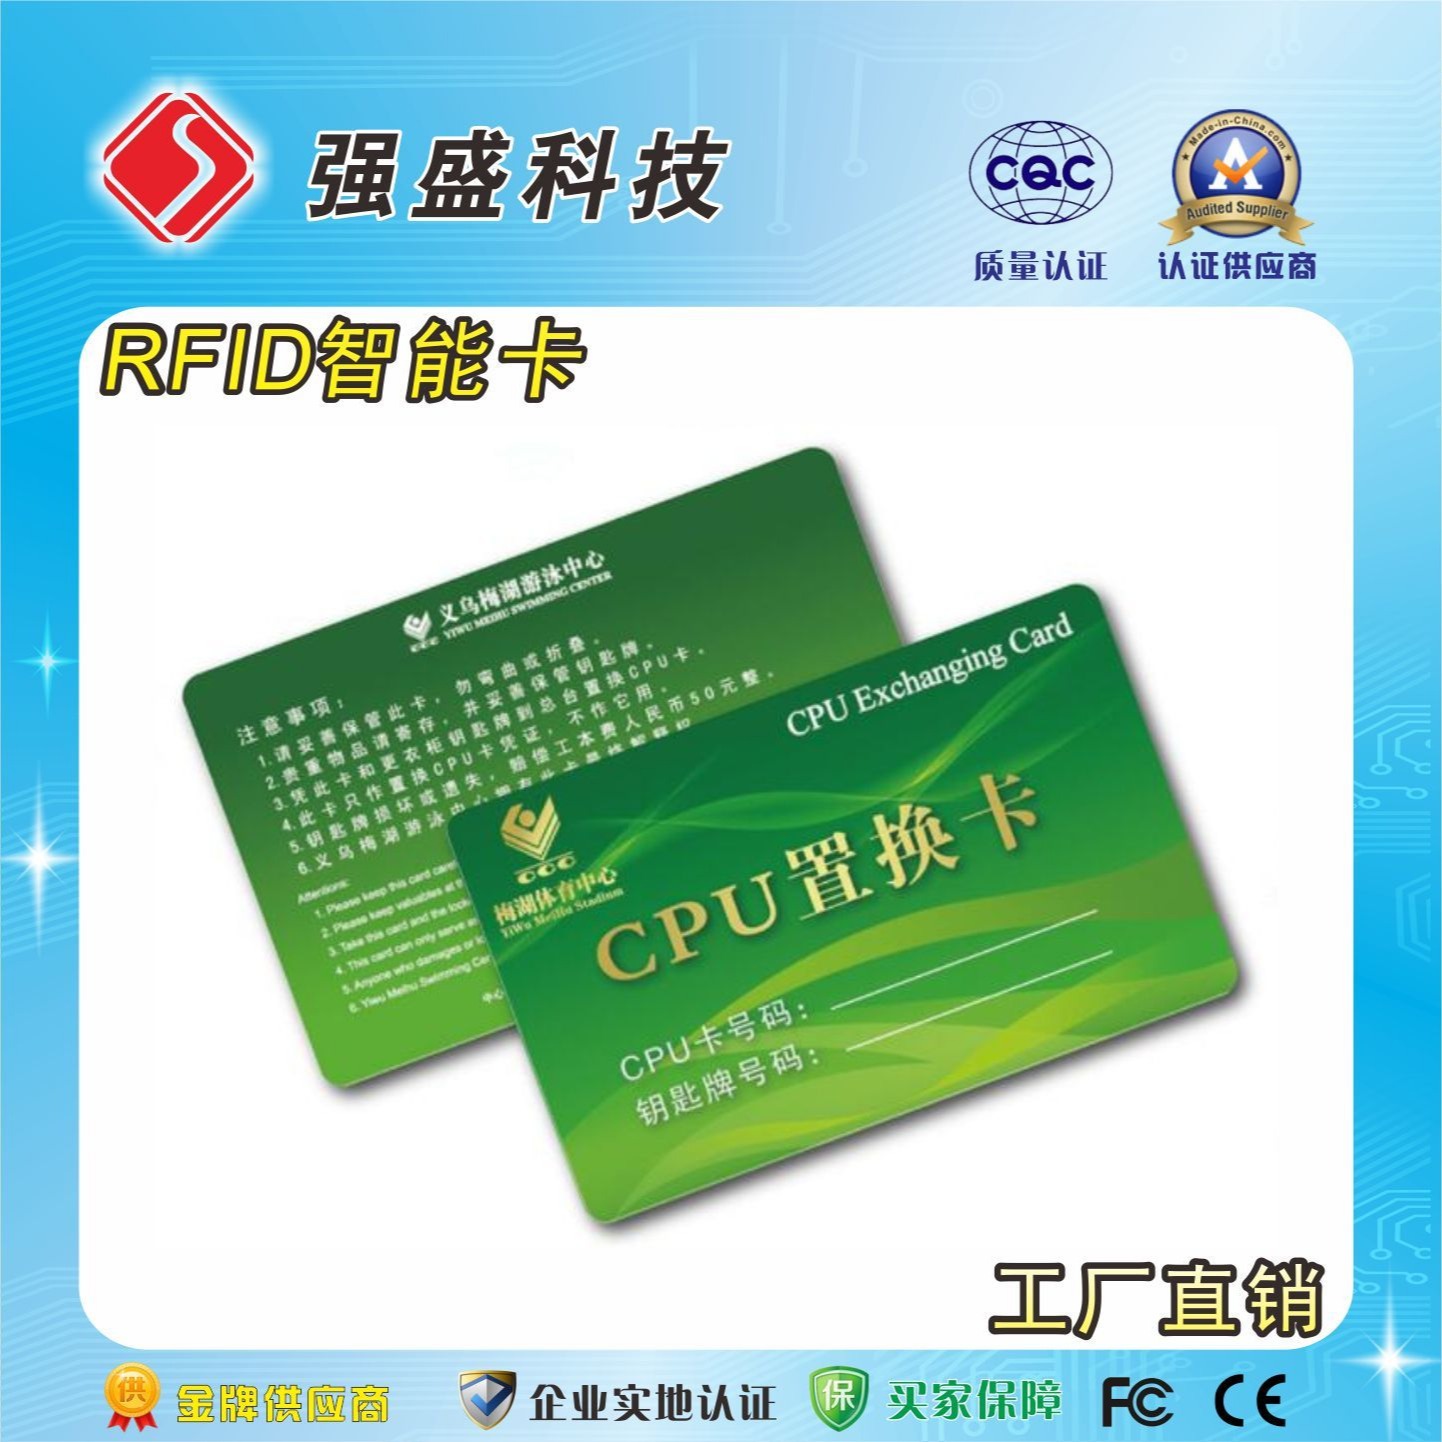 供应国密CPU卡 FM1216-137芯片 校园一卡通 CPU双界面卡